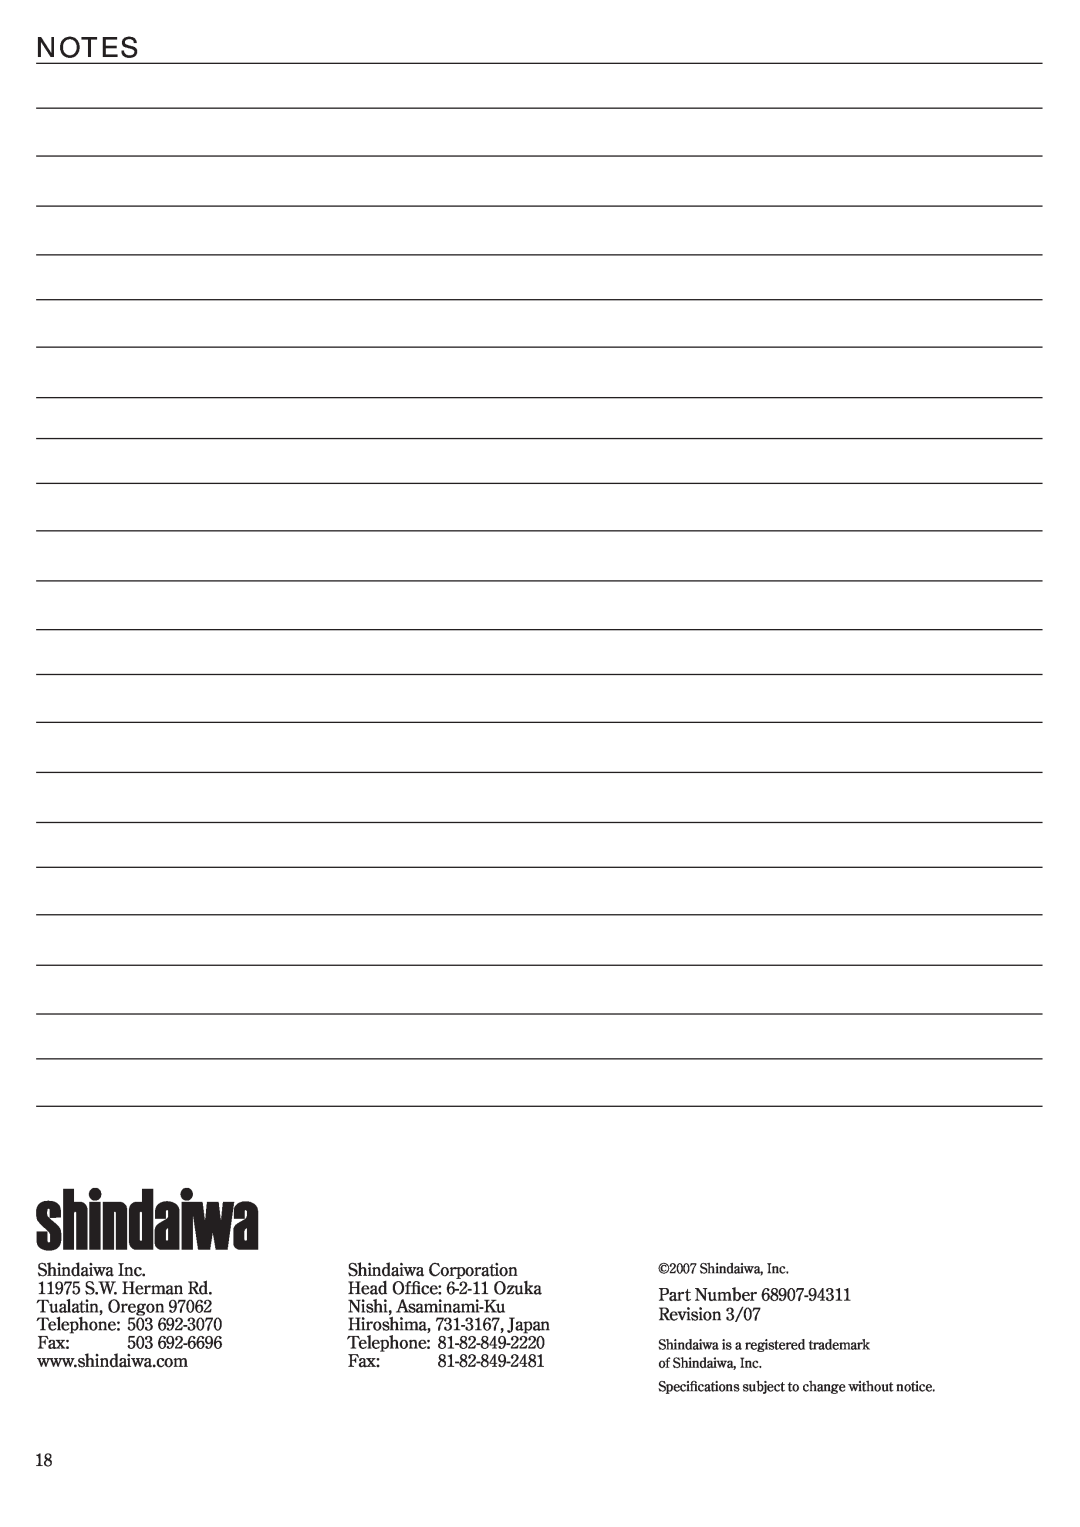 Shindaiwa EB3410/EVC, EB2510/EVC, 68907-94311 manual Notes, Shindaiwa Inc 